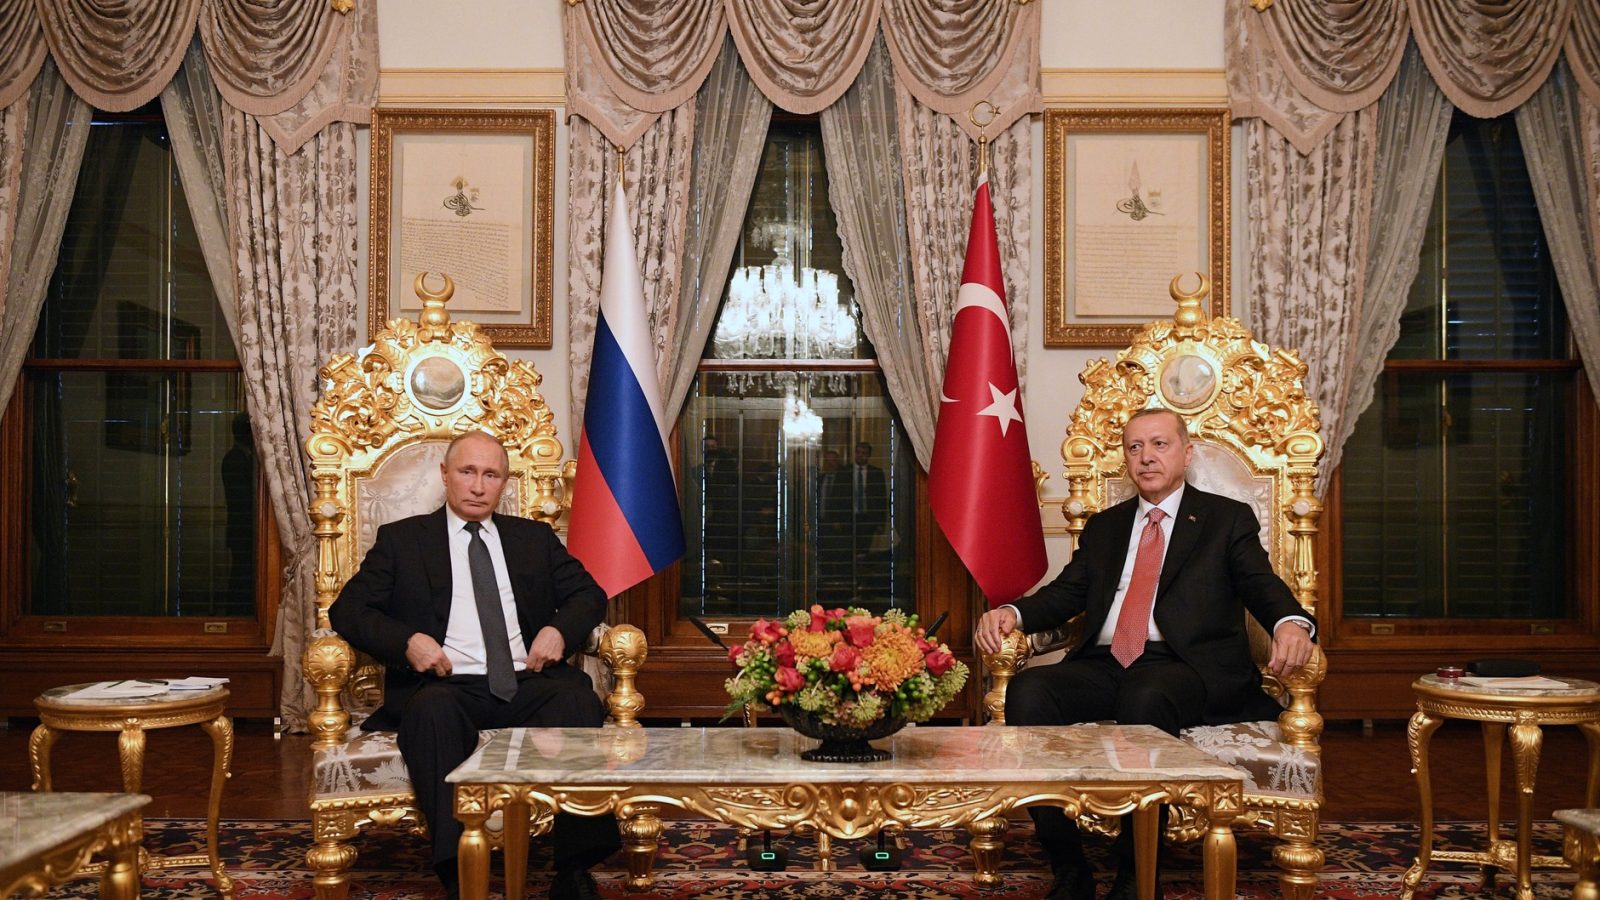 Putin and Erdogan Meeting